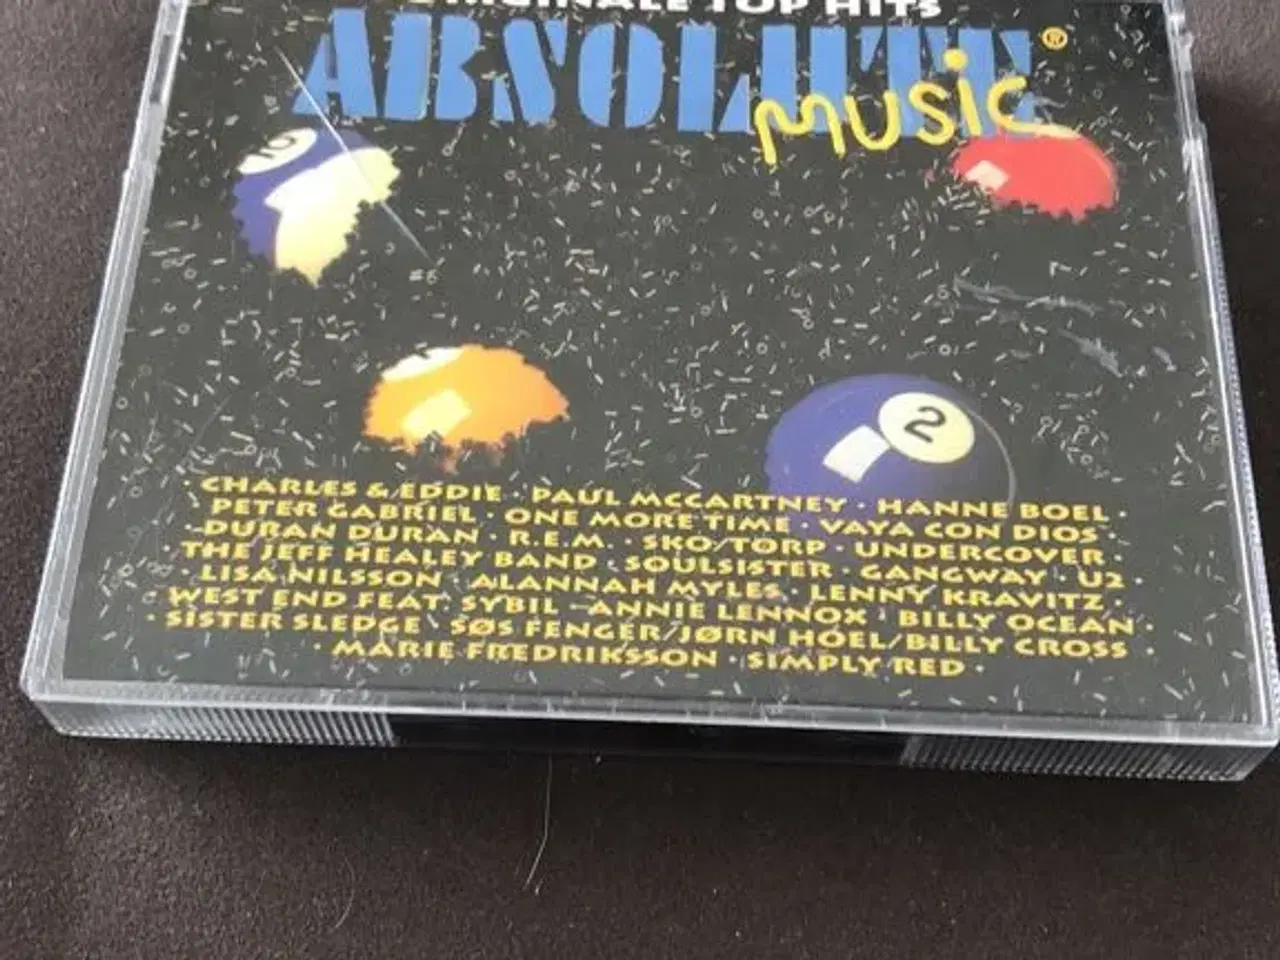 Billede 2 - Absolute Music 2 -  CD og kassettebånd